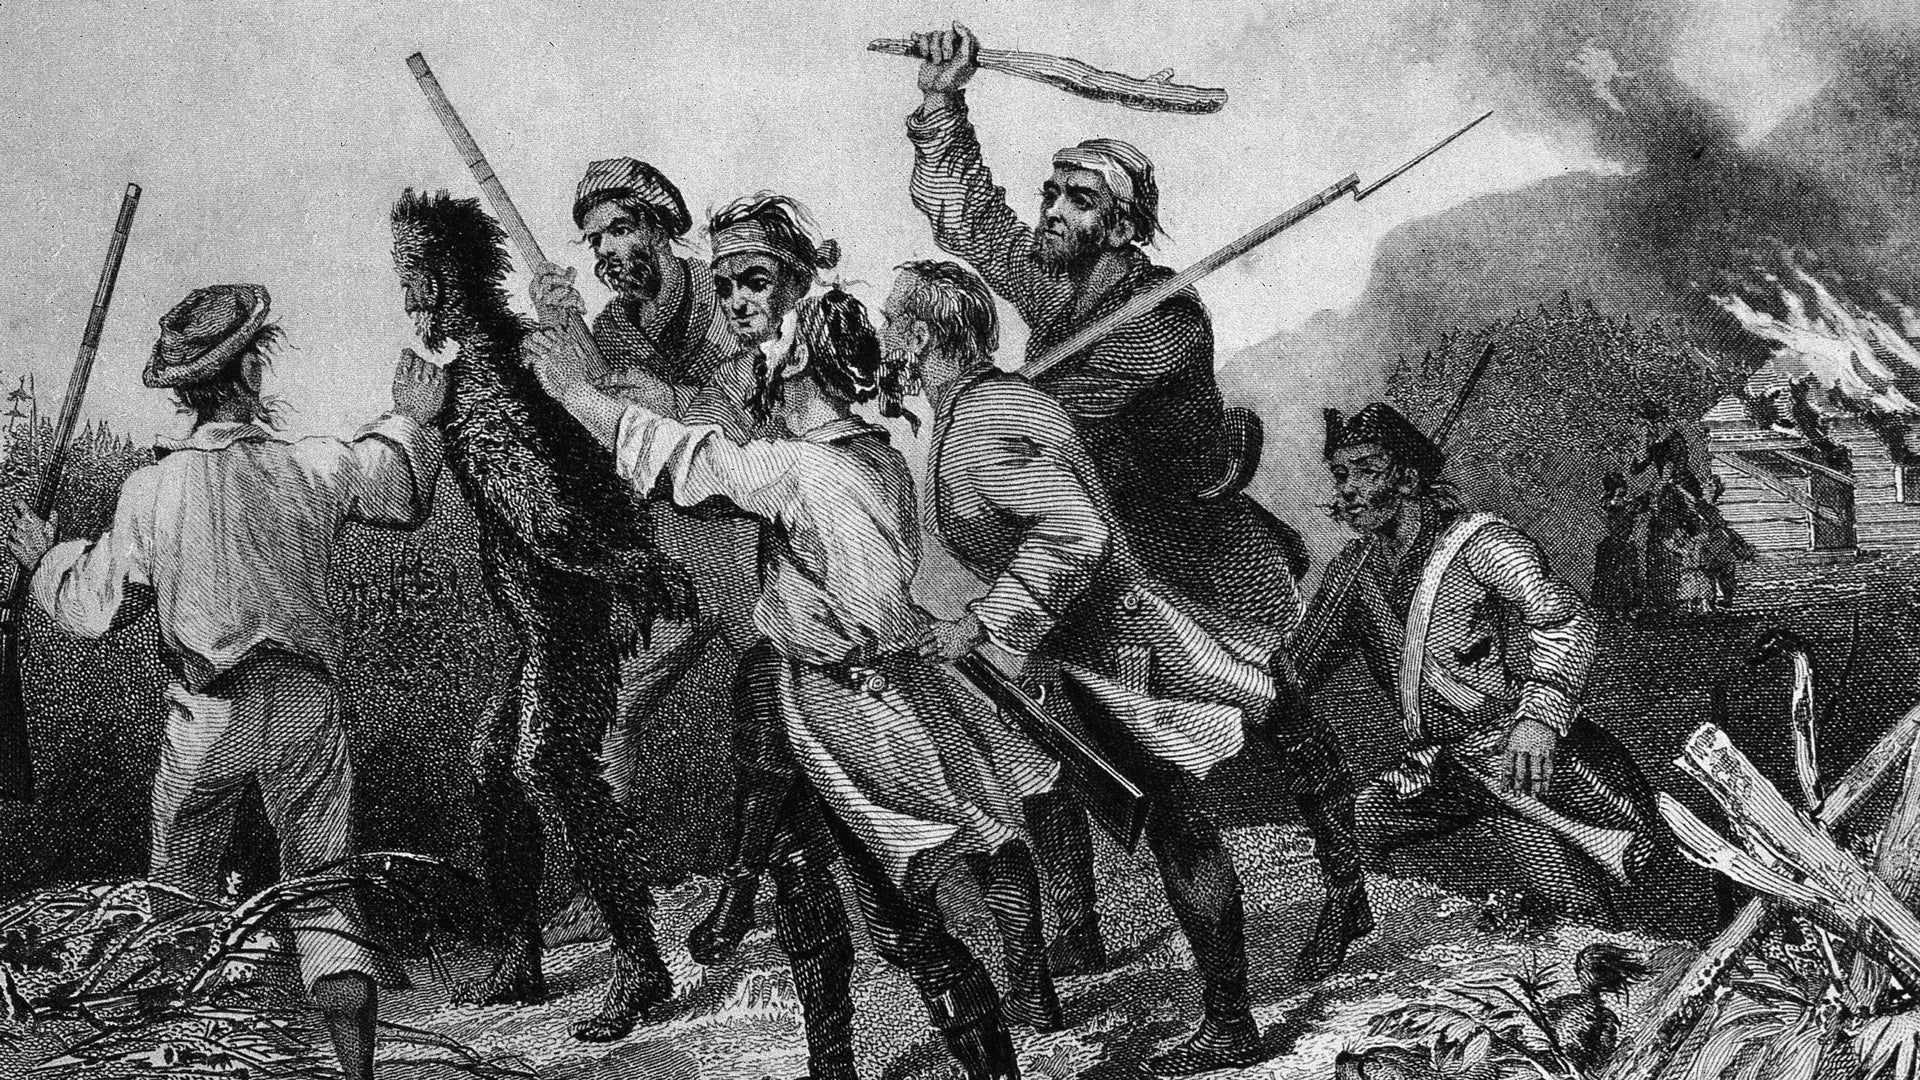 La rébellion du whisky de 1794 : la première taxe imposée par le gouvernement à une nouvelle nation